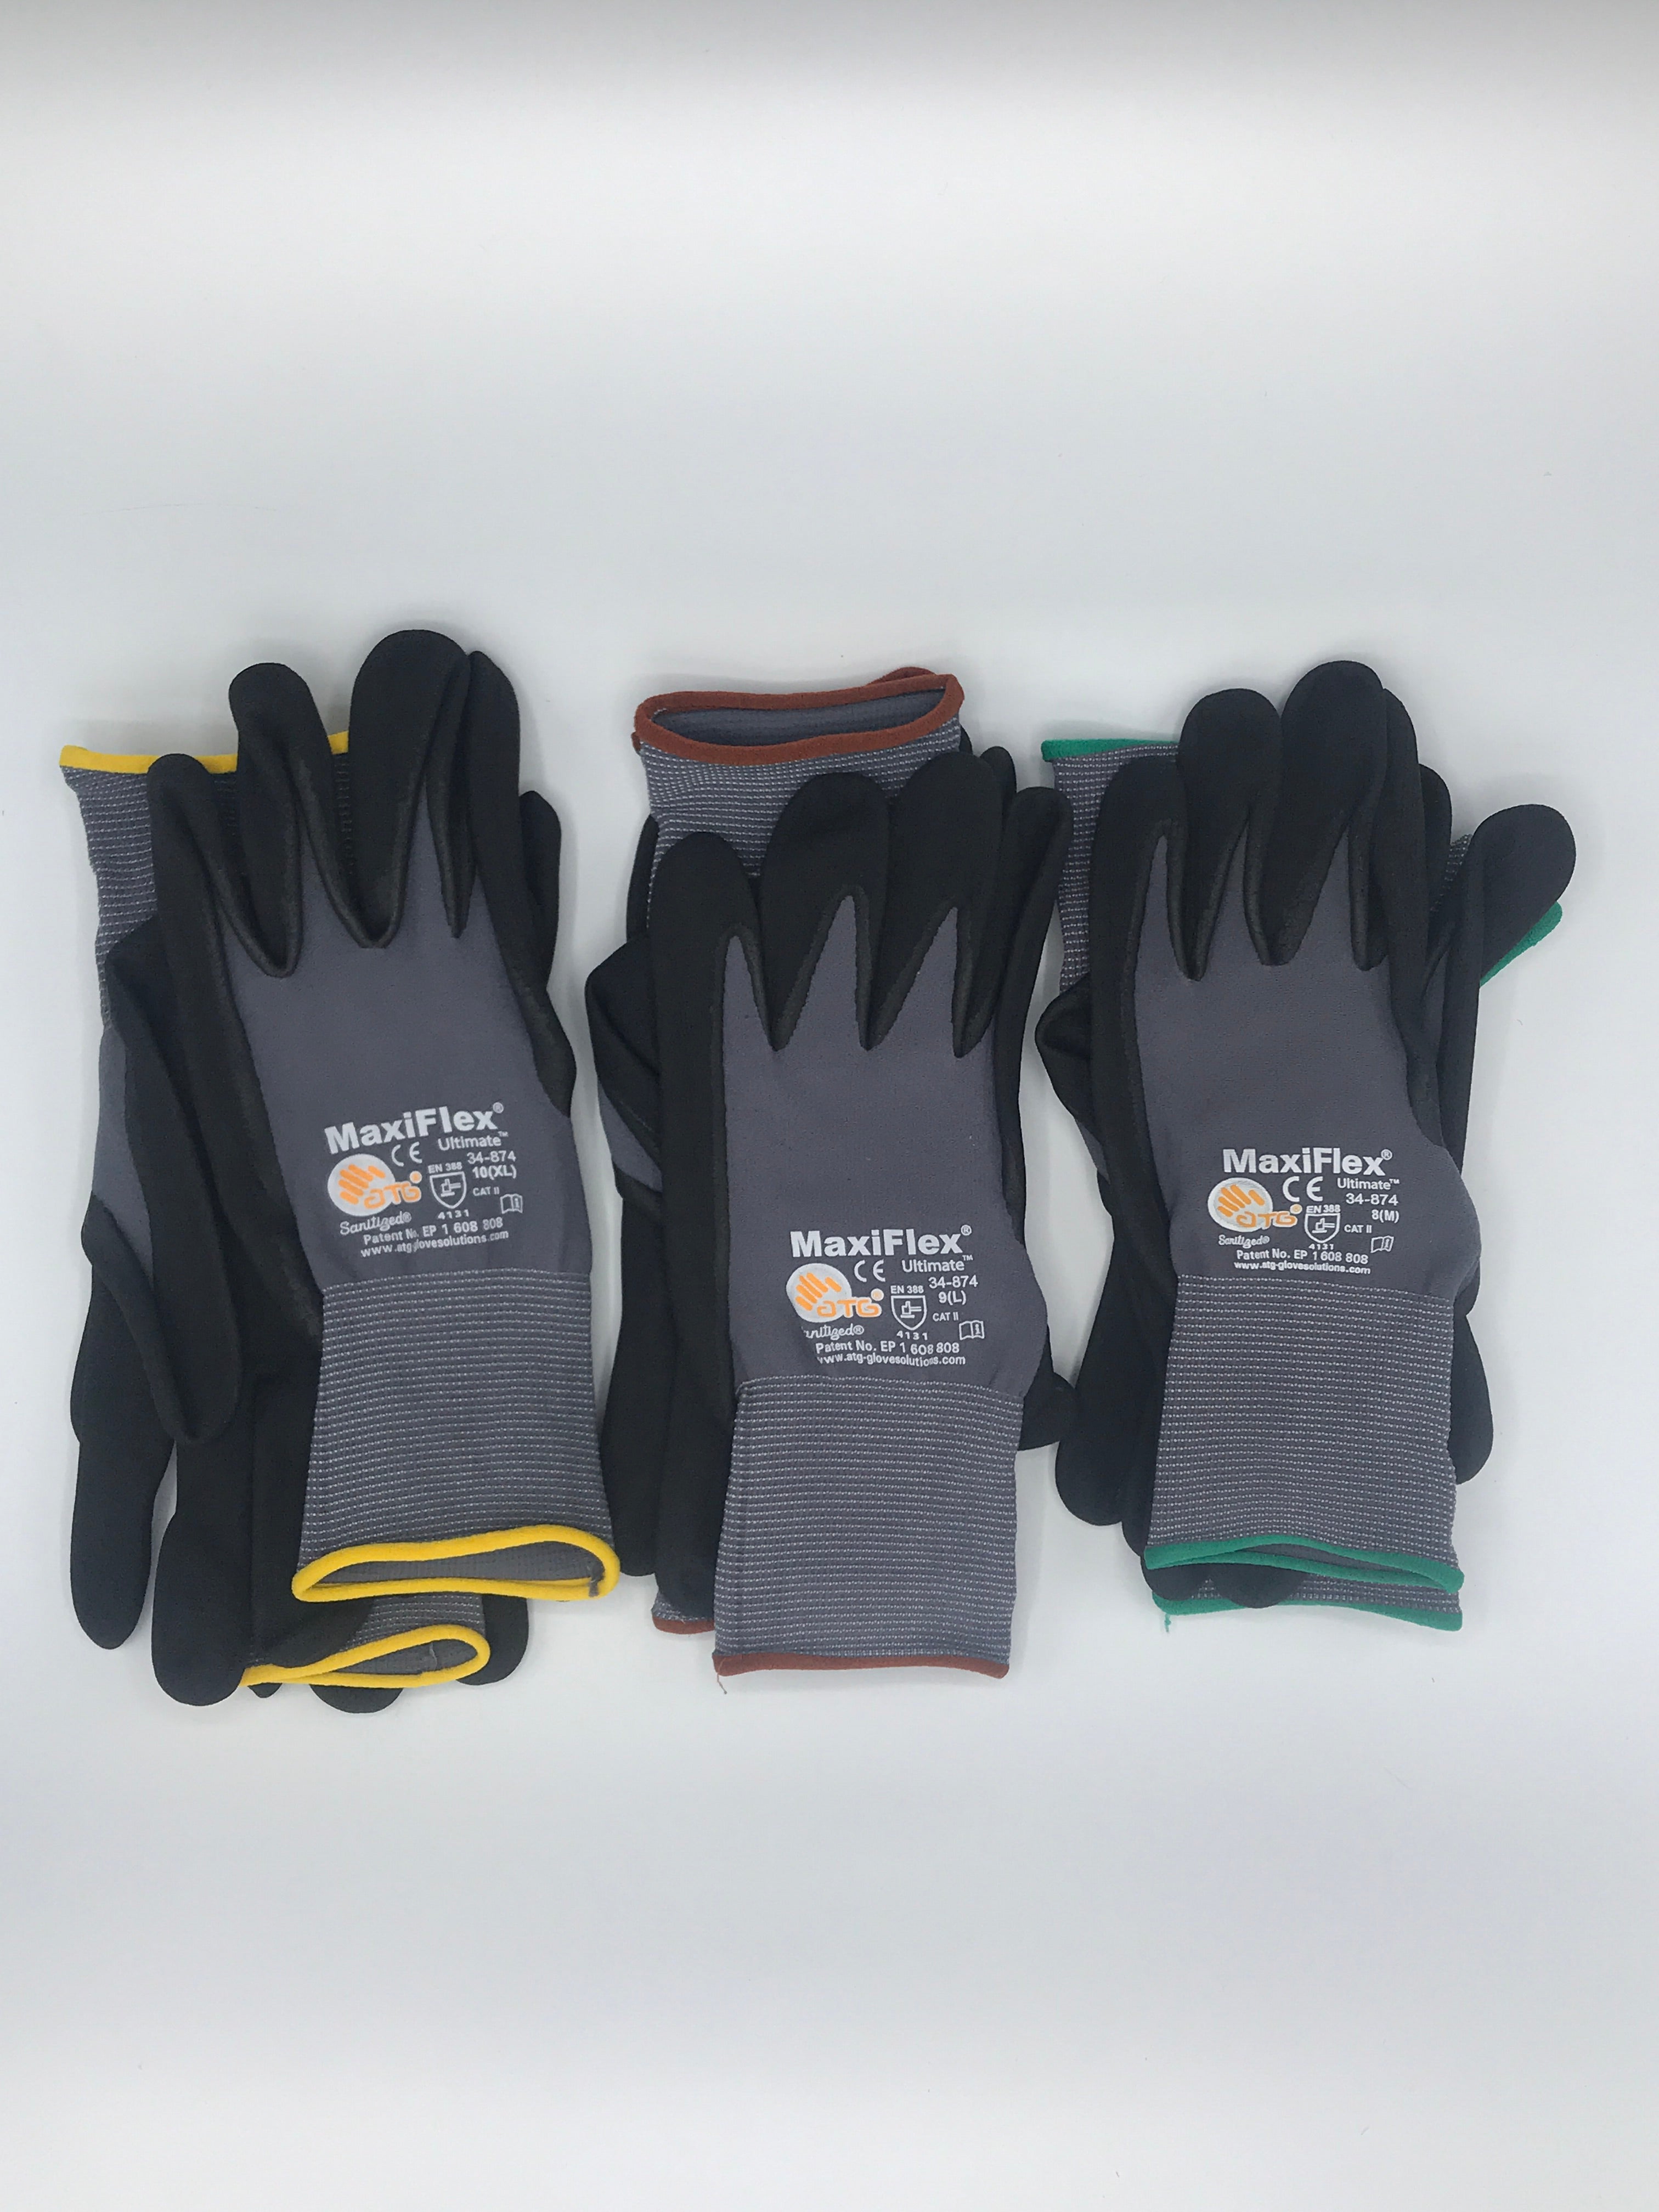 Heat resistant work gloves